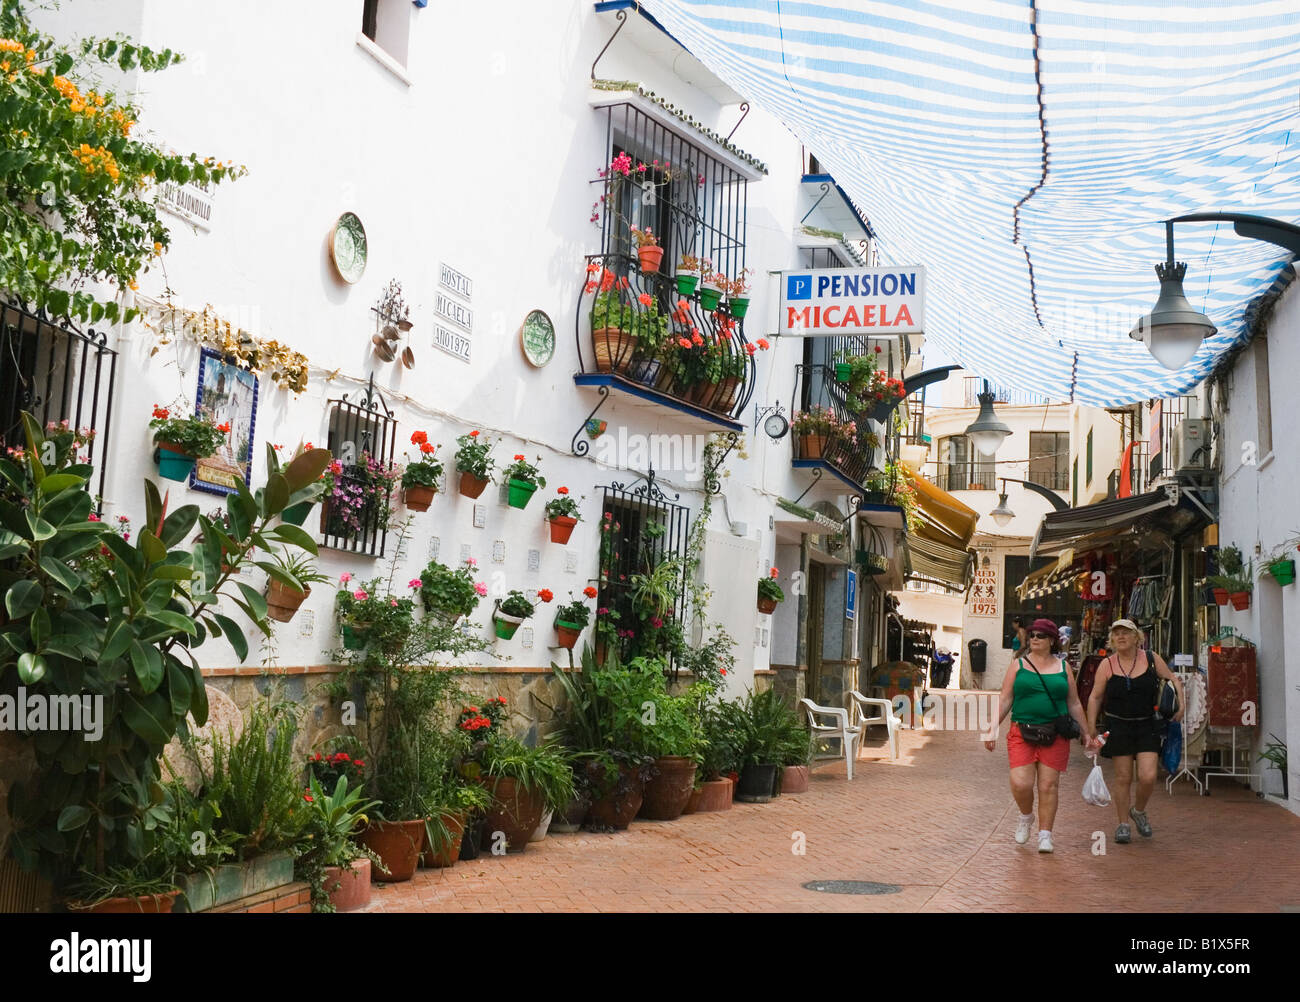 La province de Malaga Torremolinos Costa del sol espagne espagnol typique en descendant la rue de la plage de Bajondillo Banque D'Images